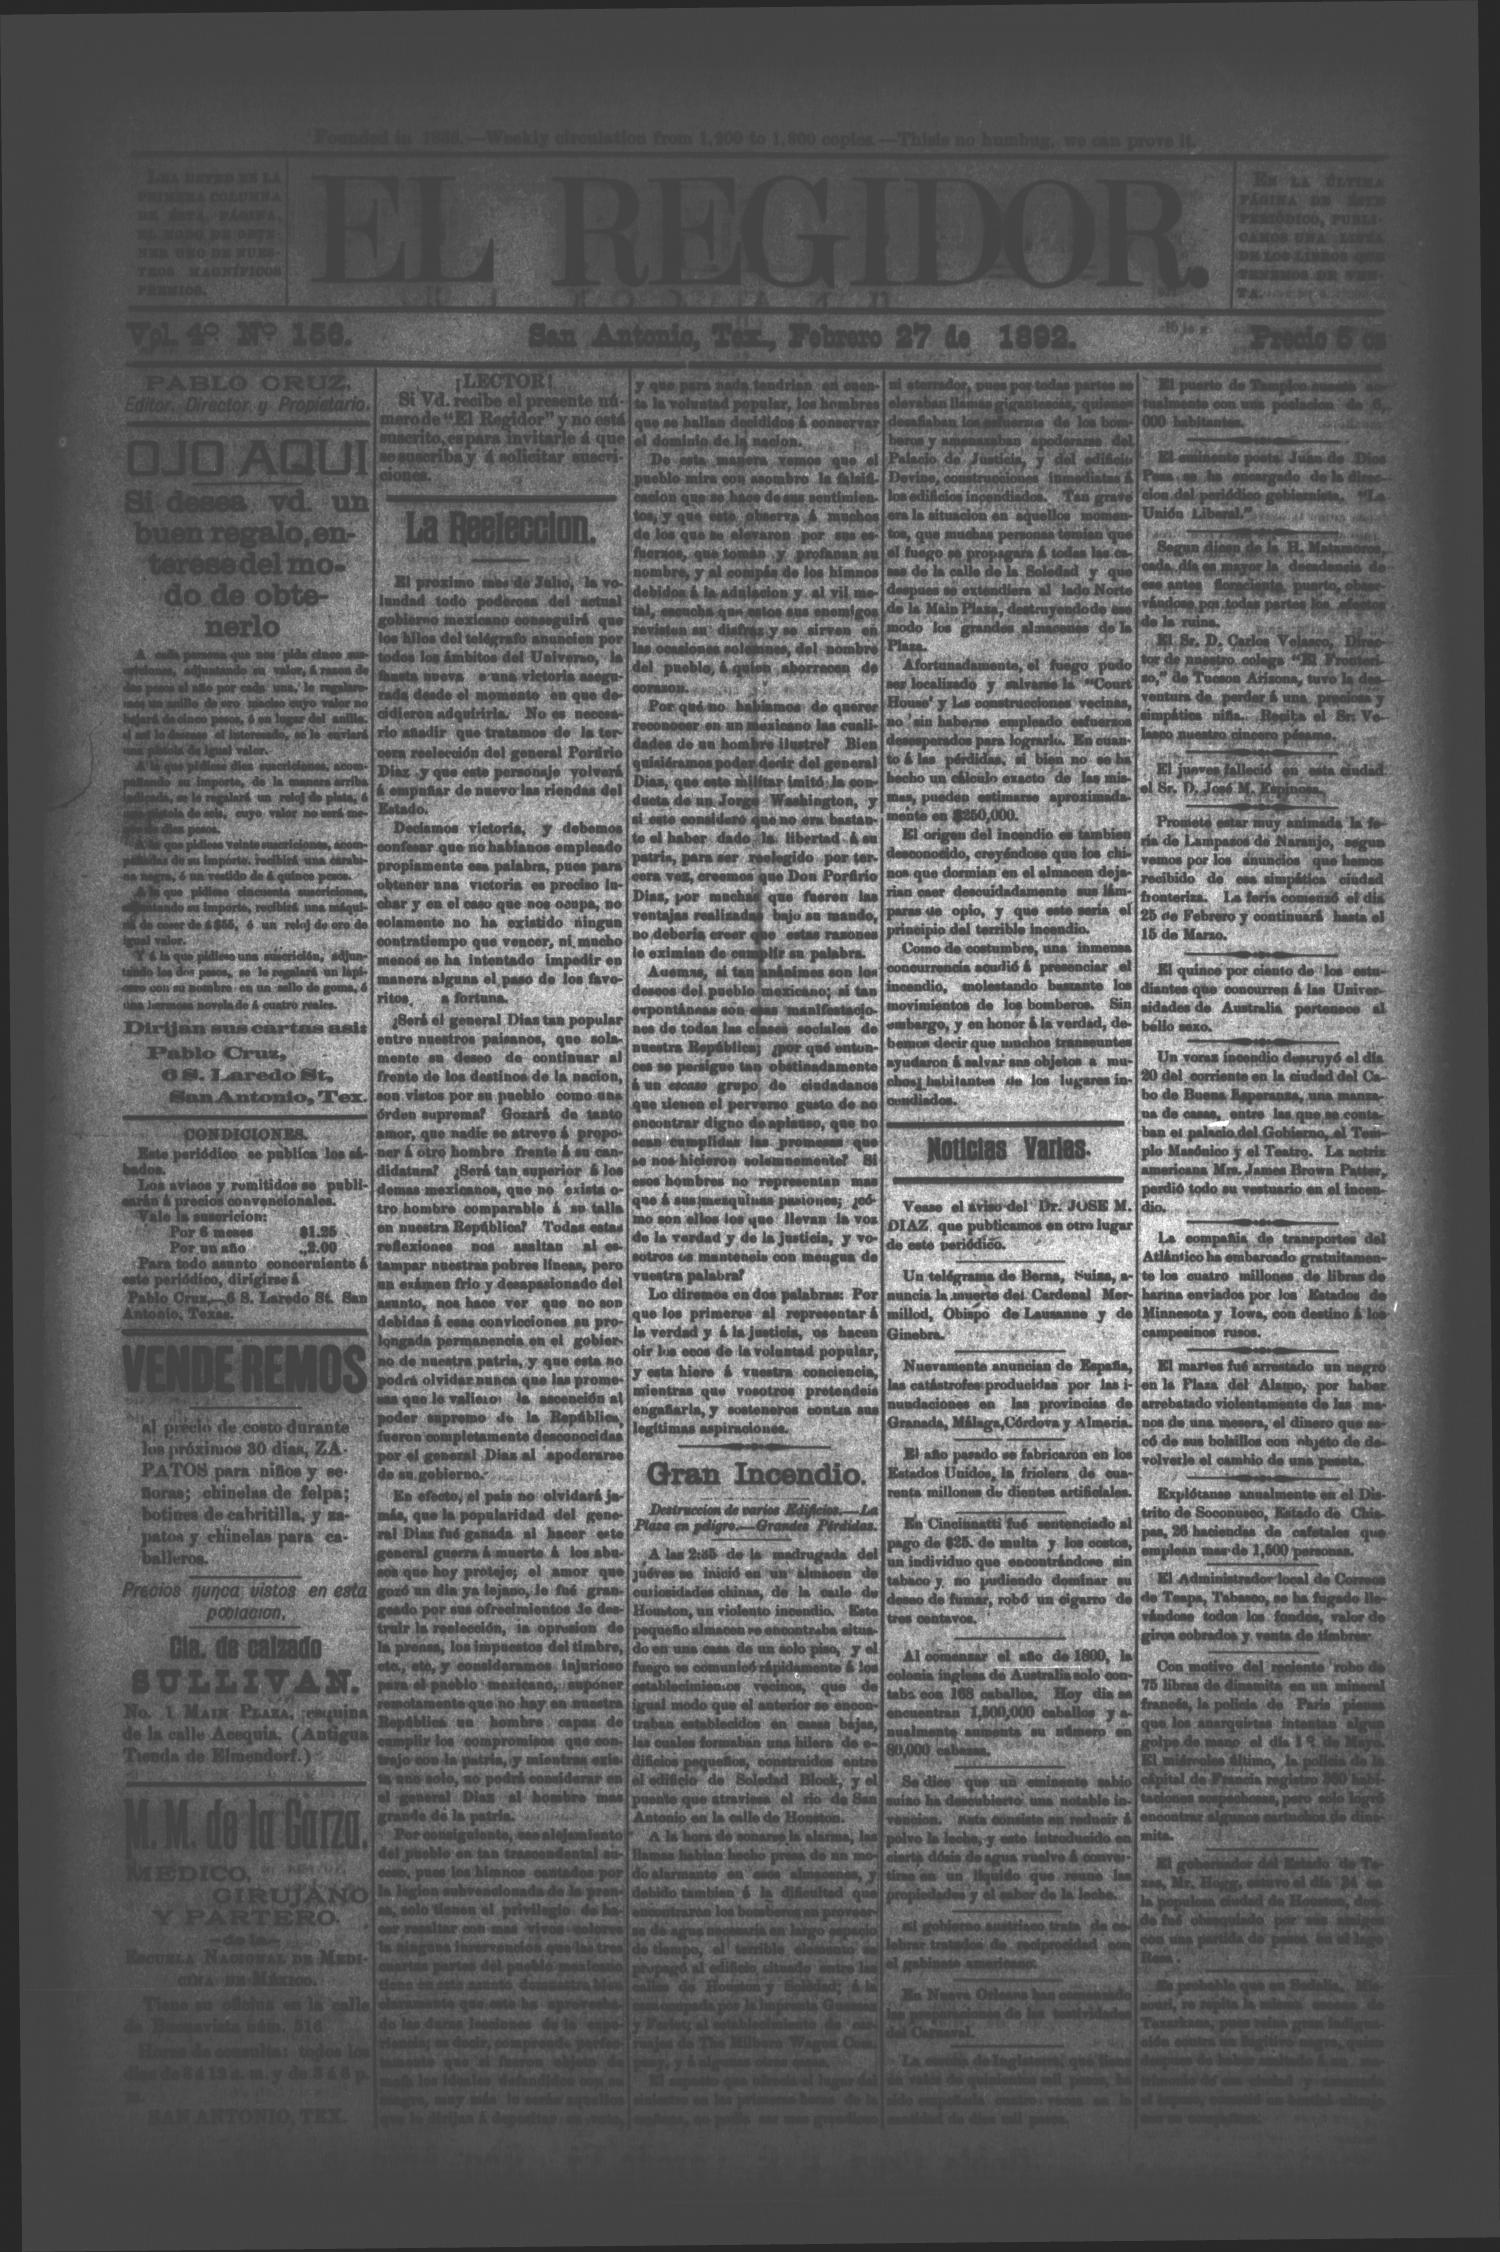 El Regidor. (San Antonio, Tex.), Vol. 4, No. 156, Ed. 1 Saturday, February 27, 1892
                                                
                                                    [Sequence #]: 1 of 4
                                                